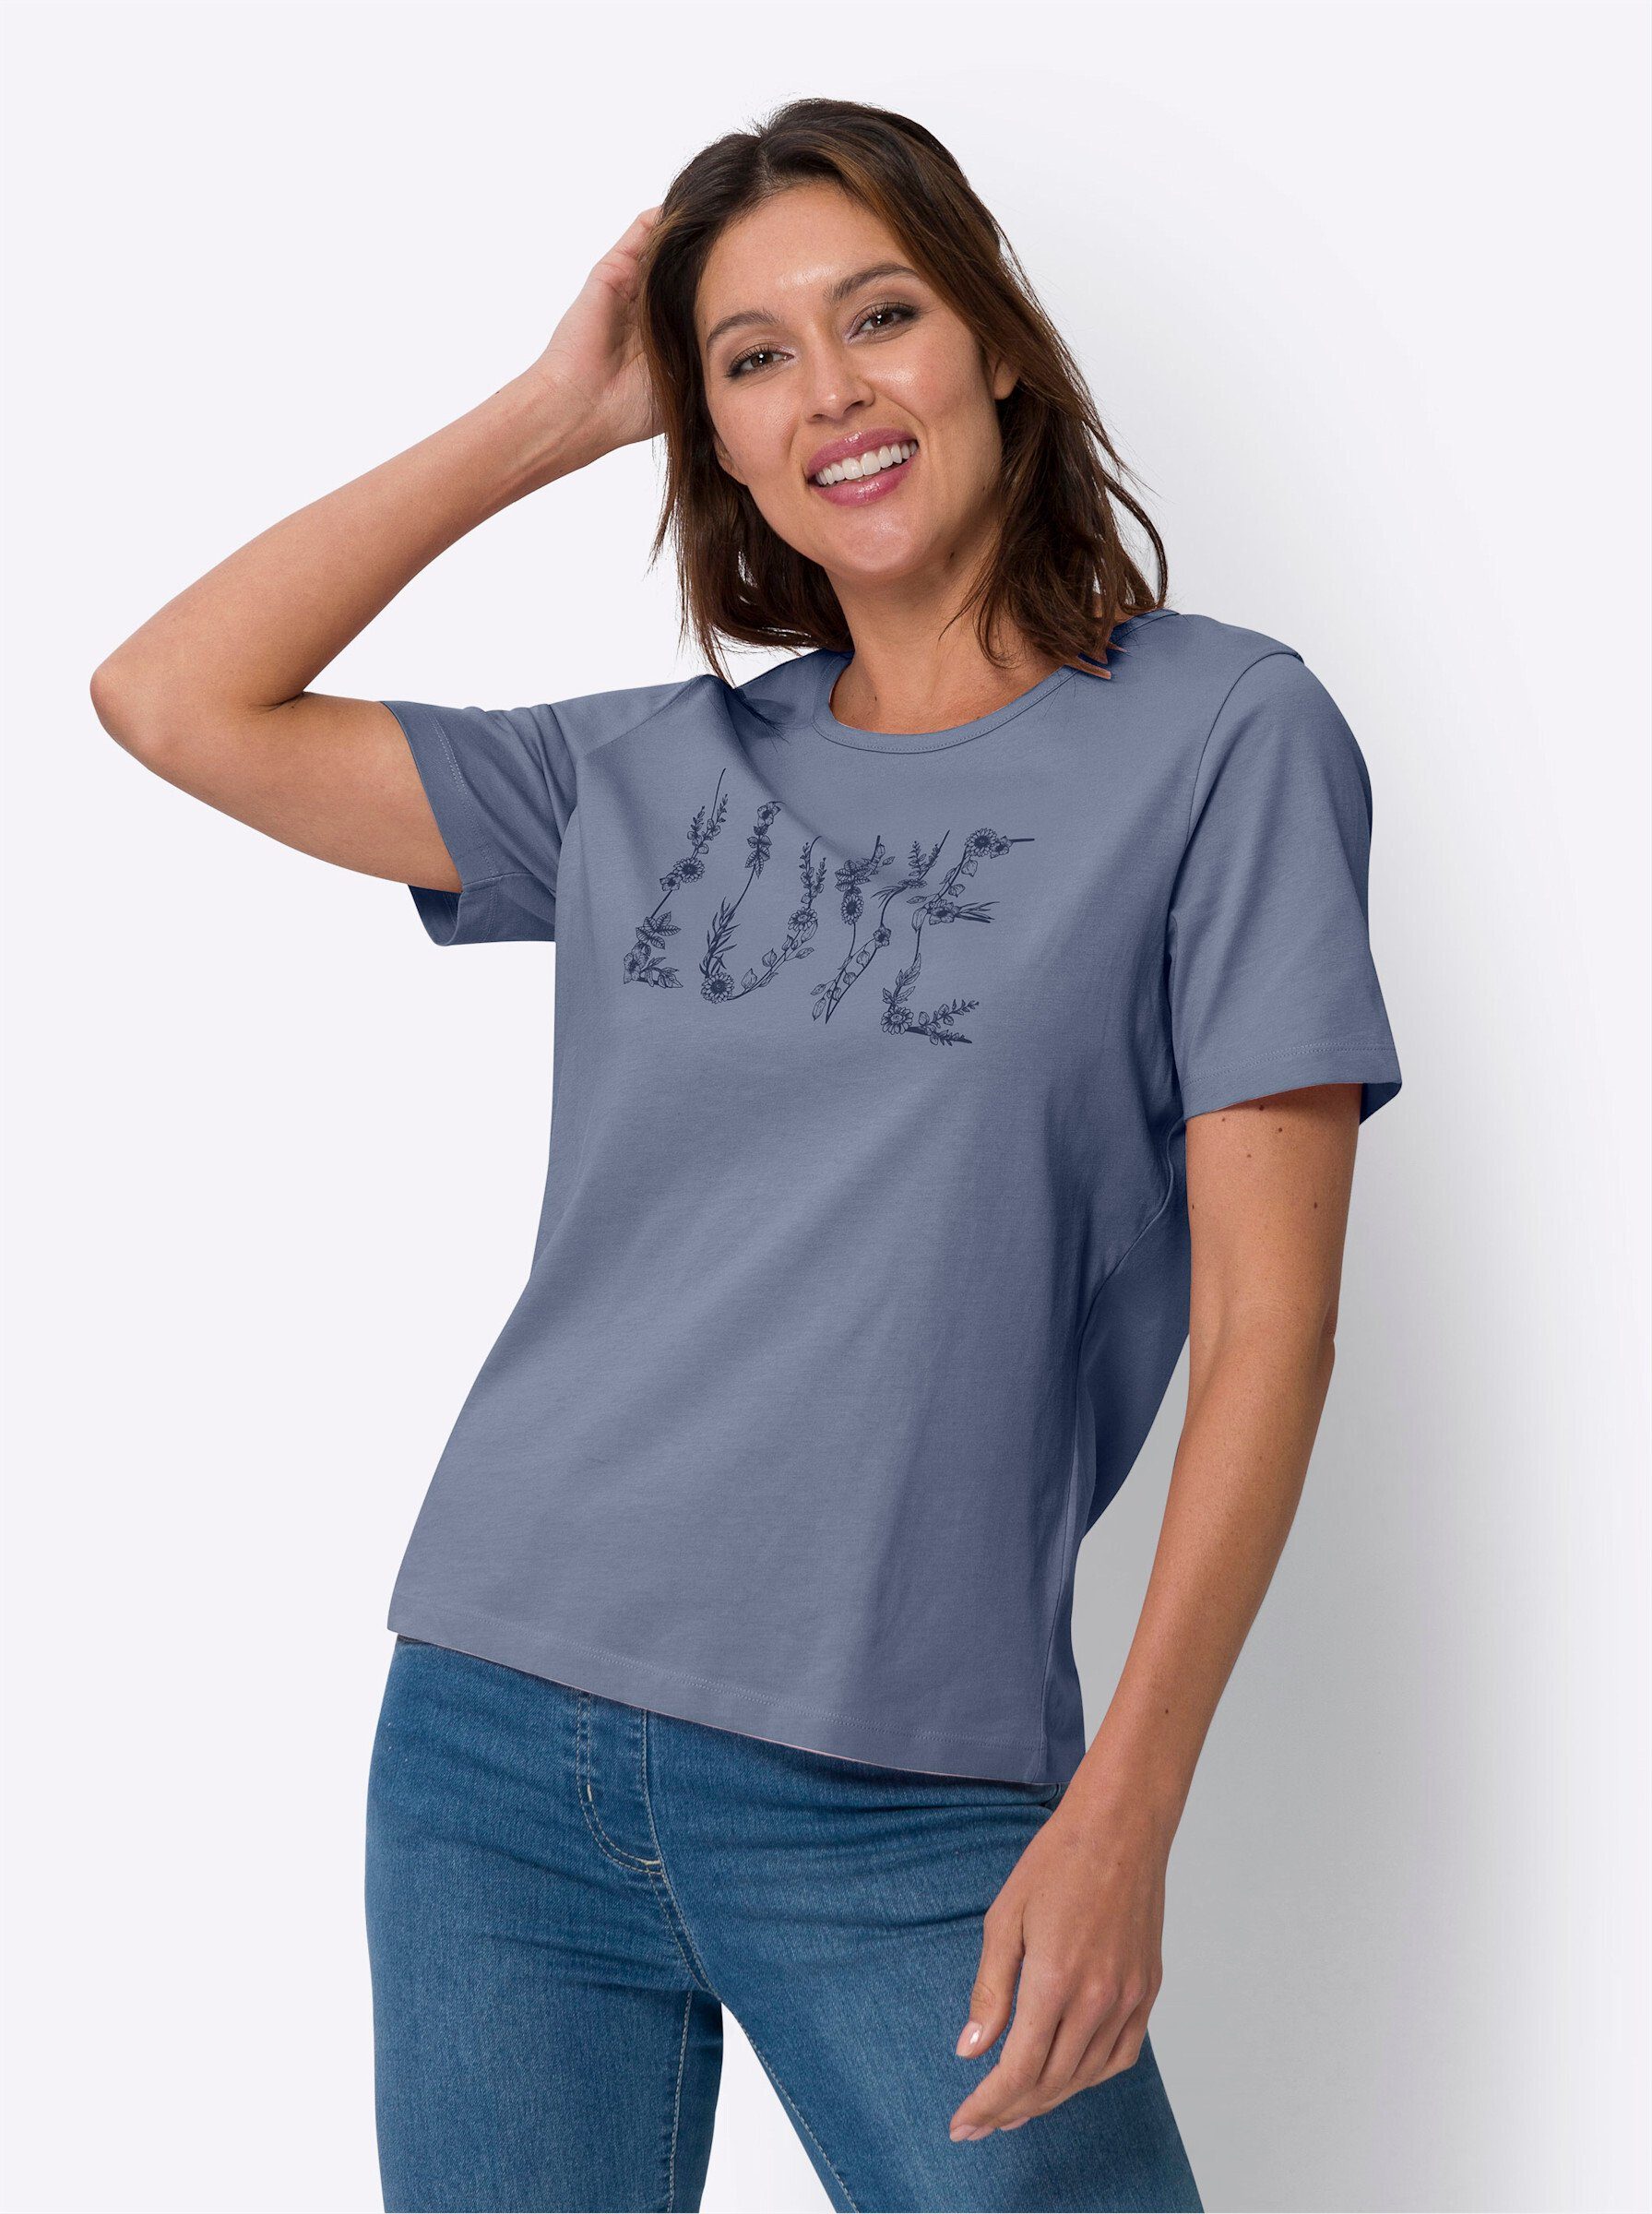 Sieh an! T-Shirt taubenblau-marine